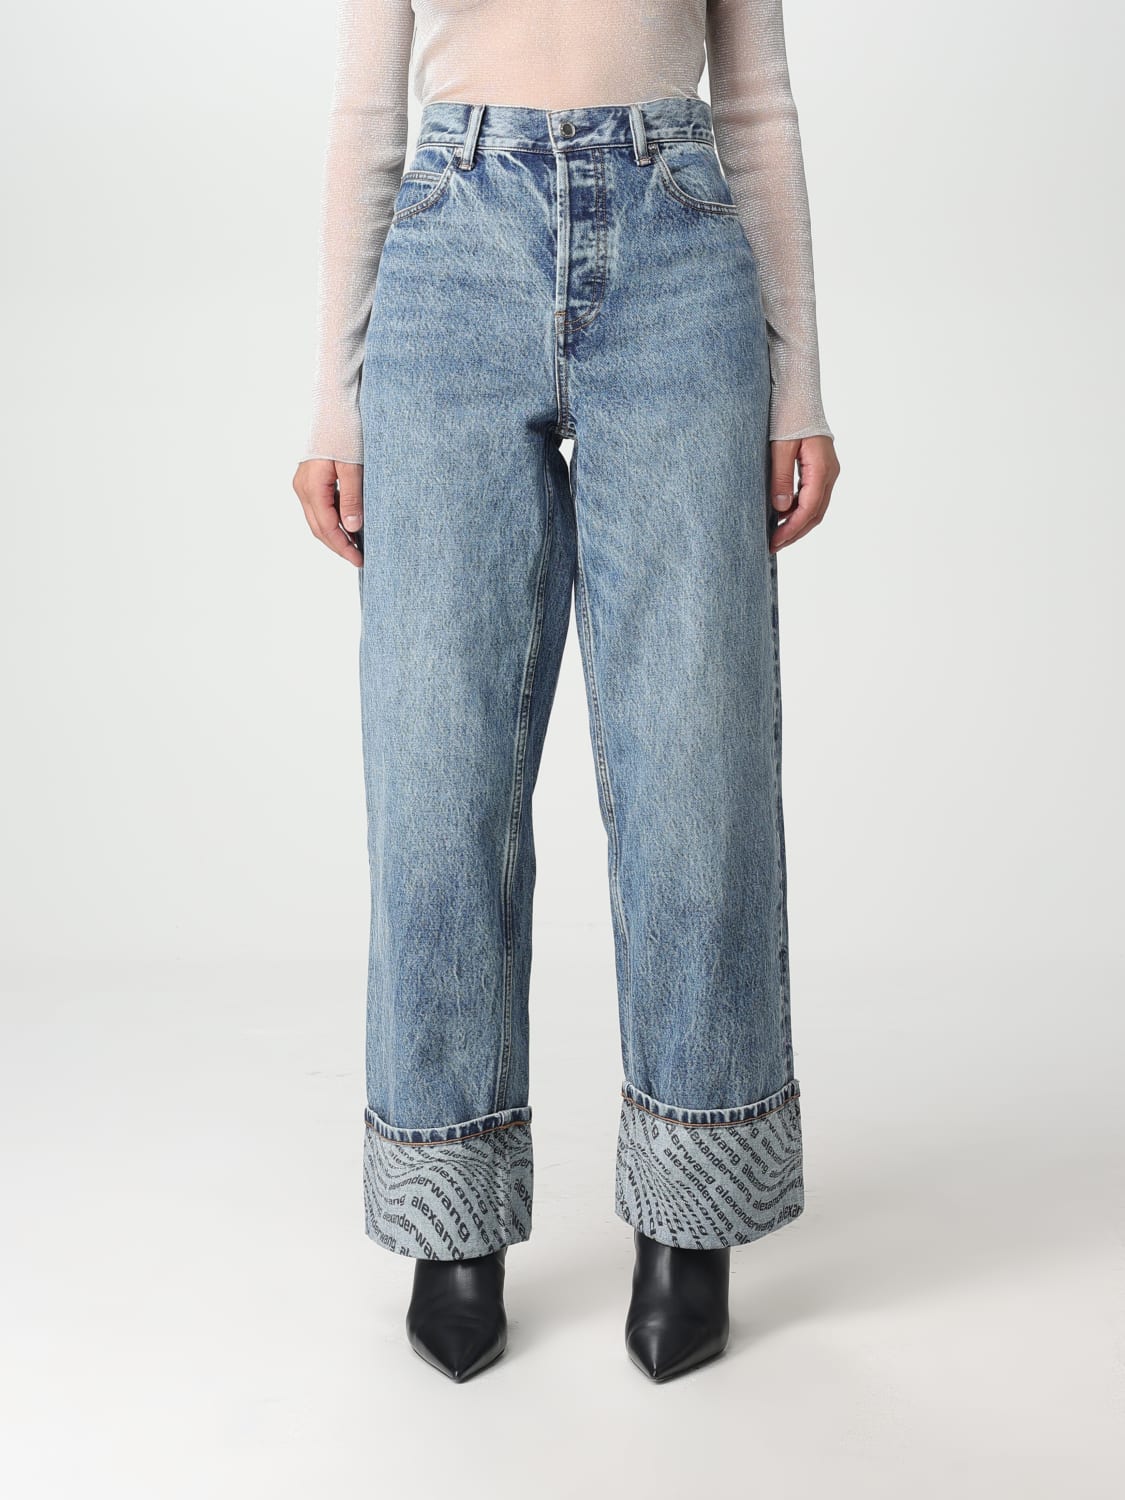 Beskrivelse Følelse telt ALEXANDER WANG: jeans for woman - Indigo | Alexander Wang jeans 4DC3234618  online at GIGLIO.COM